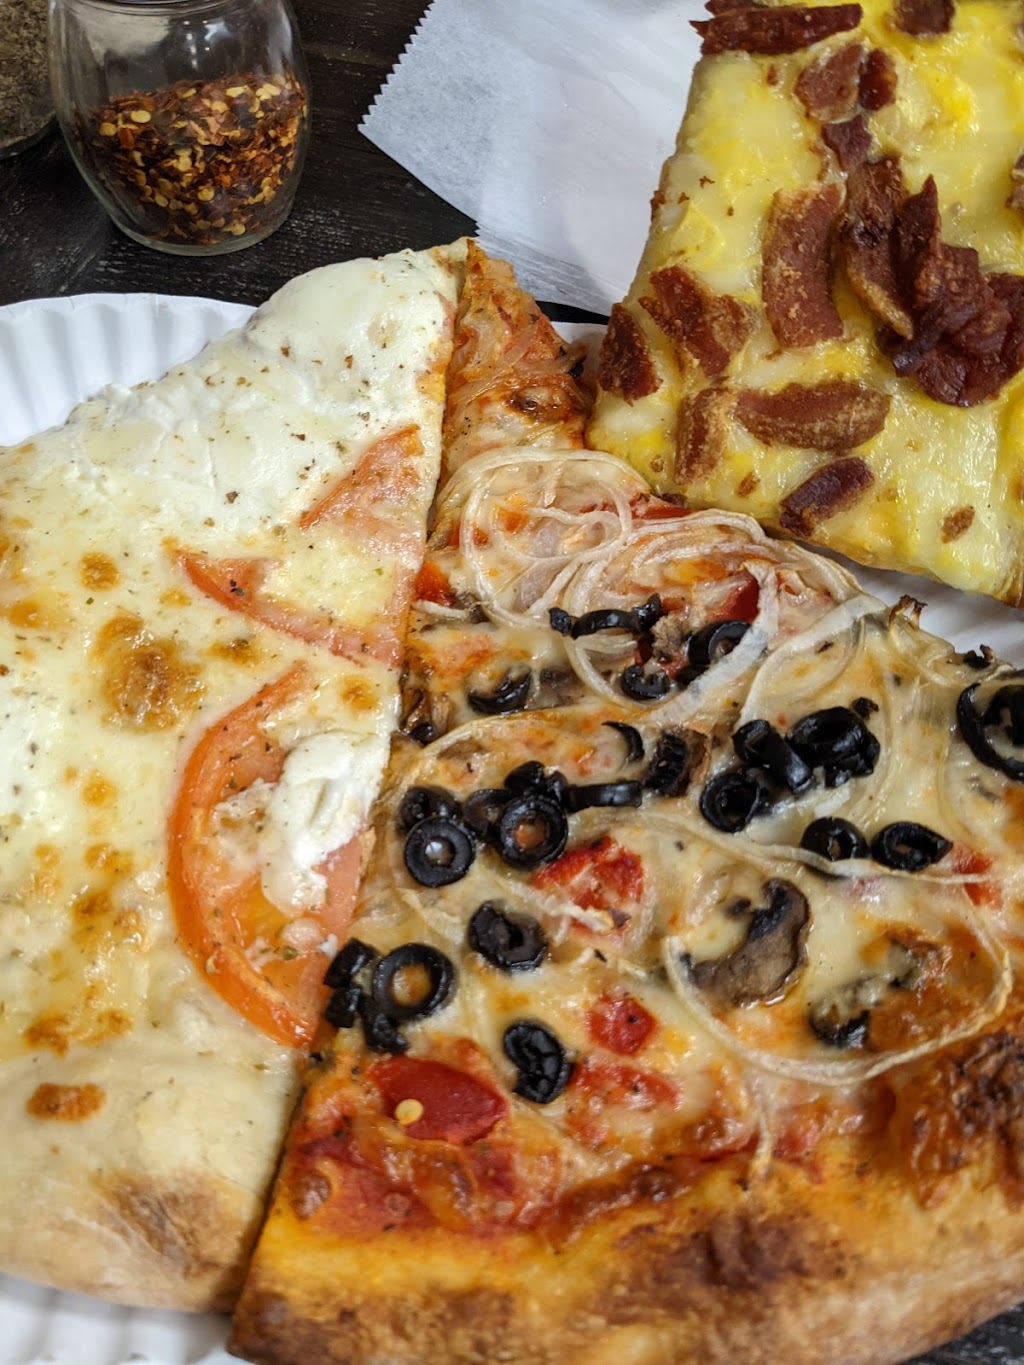 Federicos Pizza On Main Oceanport | 281 E Main St, Oceanport, NJ 07757, USA | Phone: (732) 440-4447